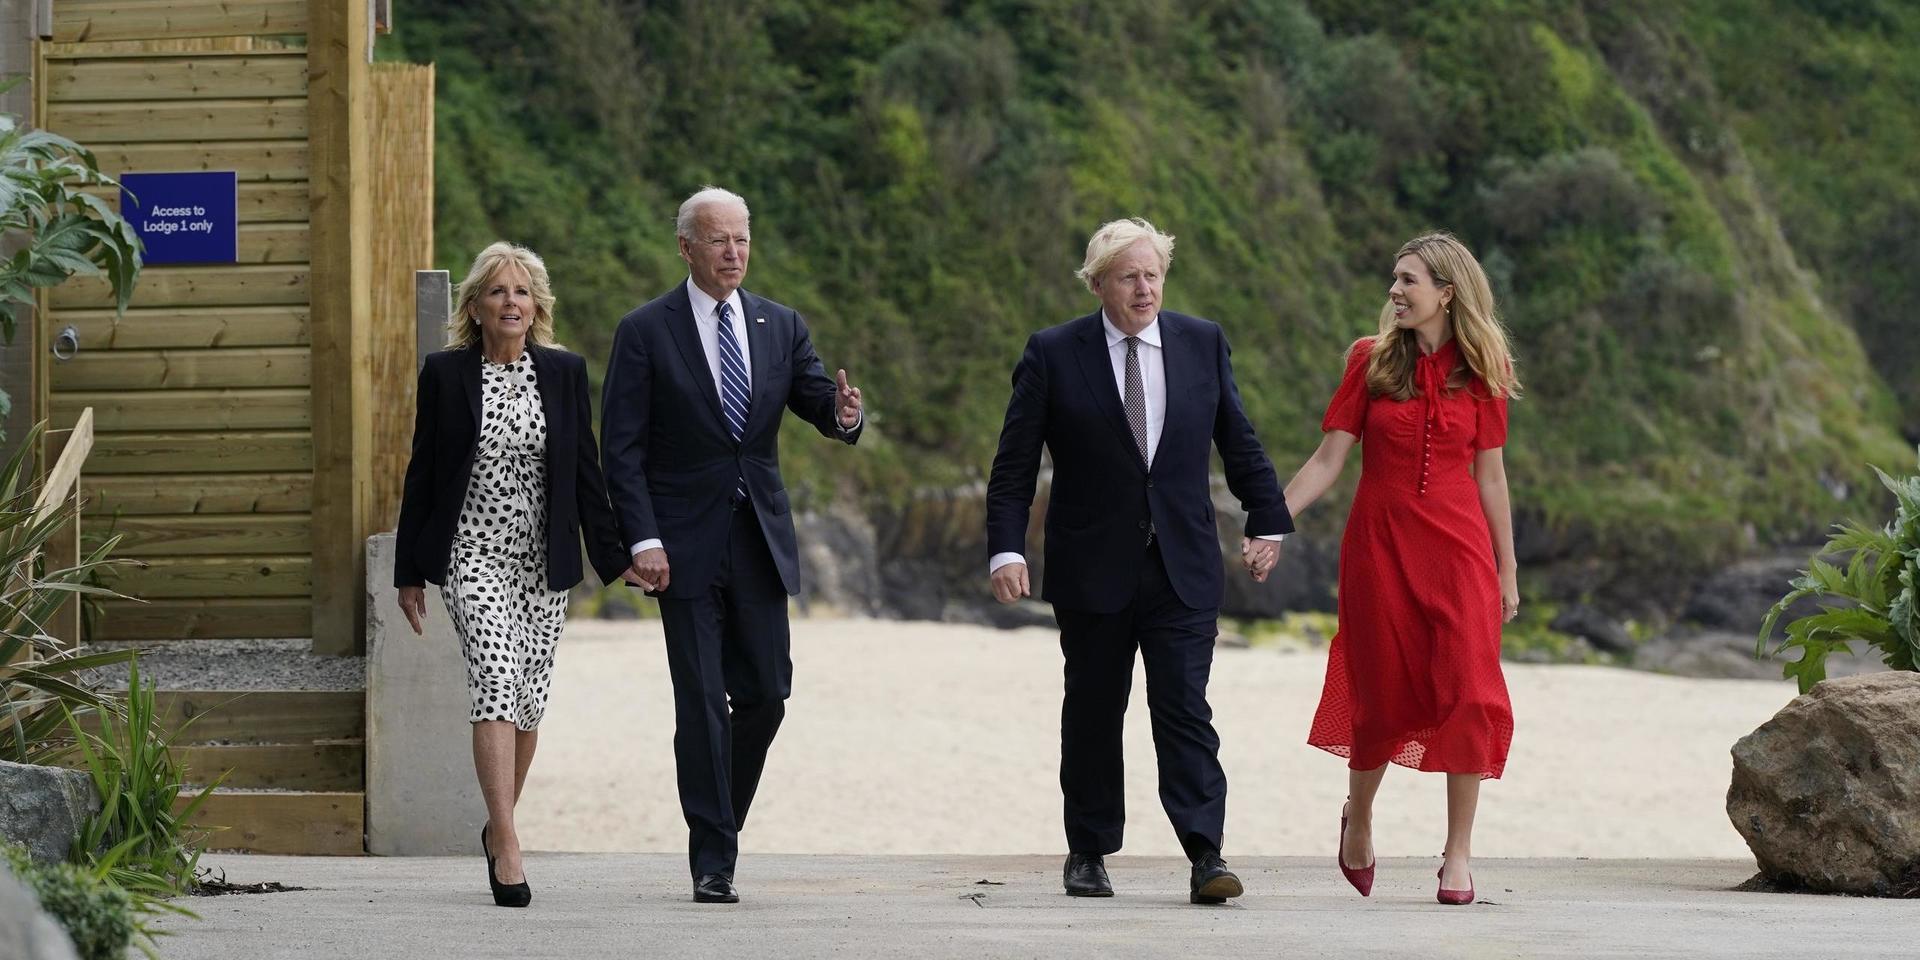 Presidentparet Joe och Jill Biden träffar Storbritanniens premiärminister Boris Johnson och hans fru Carrie Johnson i Carbis Bay, England.